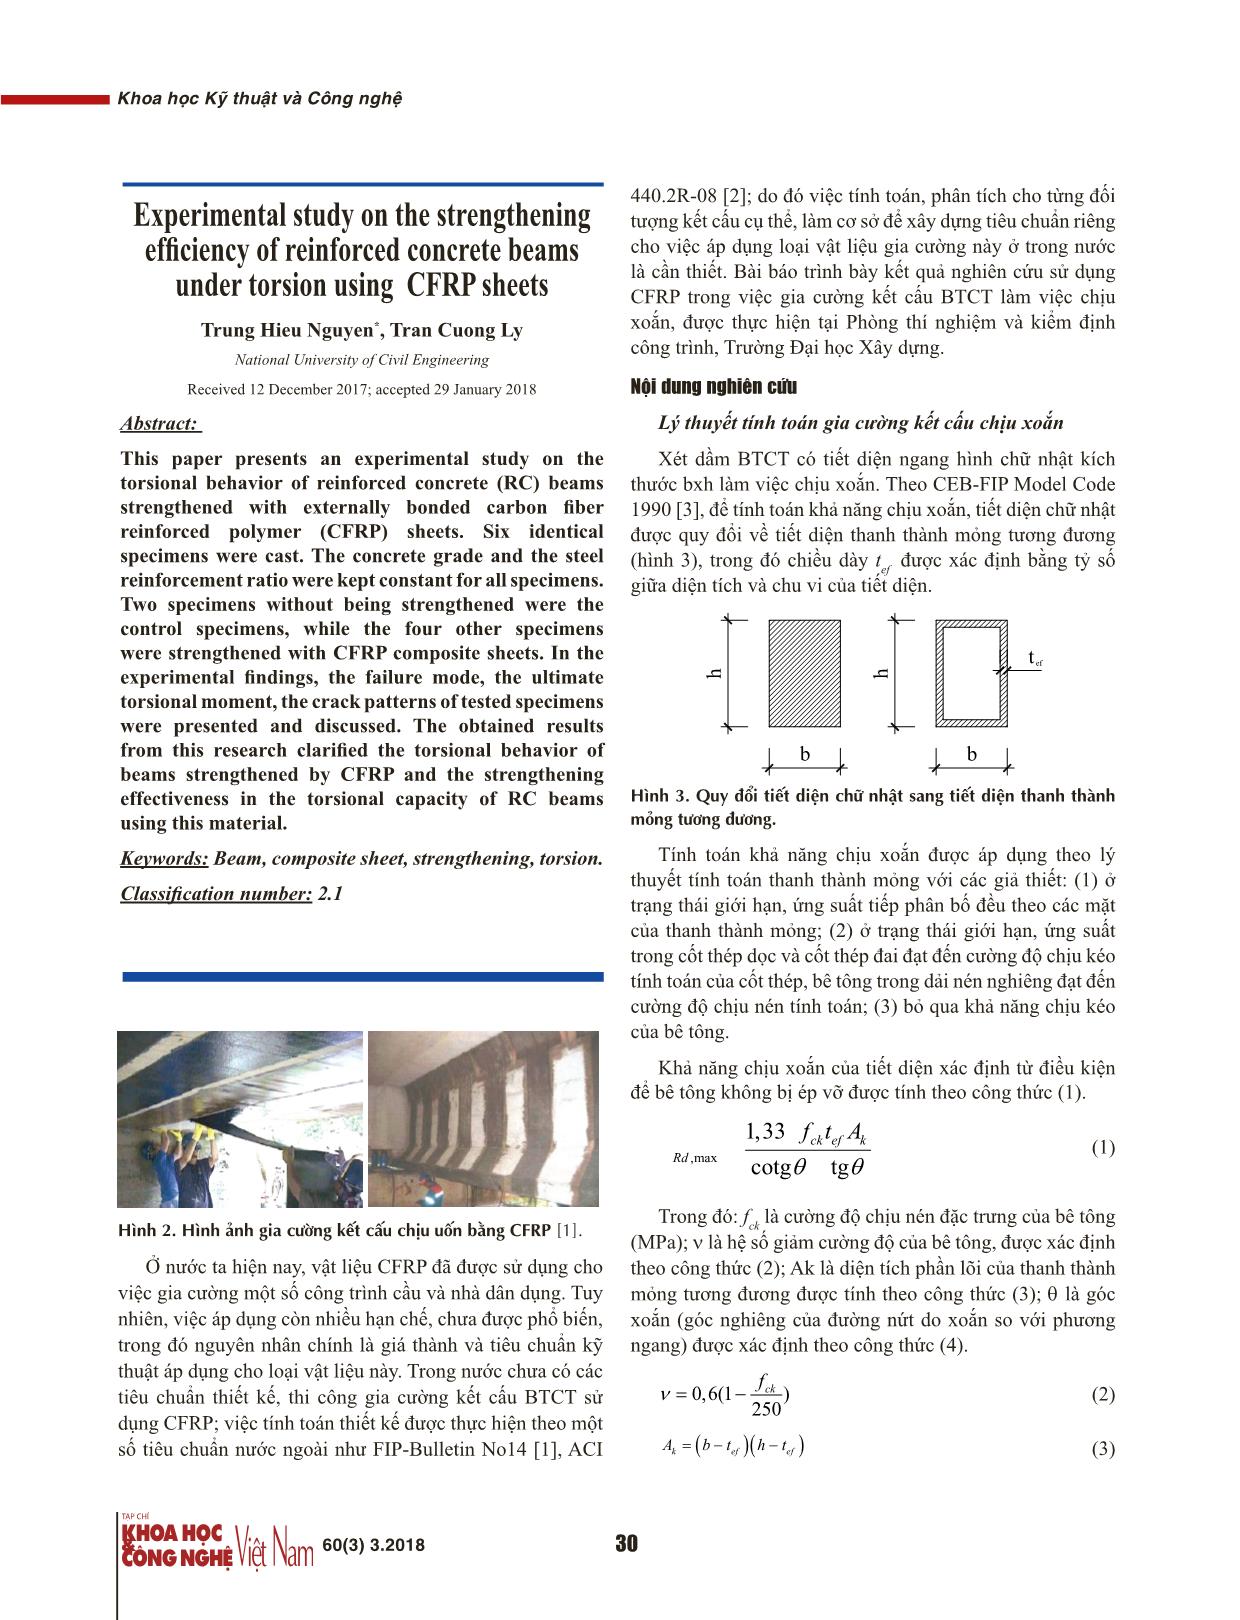 Nghiên cứu thực nghiệm hiệu quả gia cường dầm bê tông cốt thép chịu xoắn bằng vật liệu tấm sợi các bon CFRP trang 2